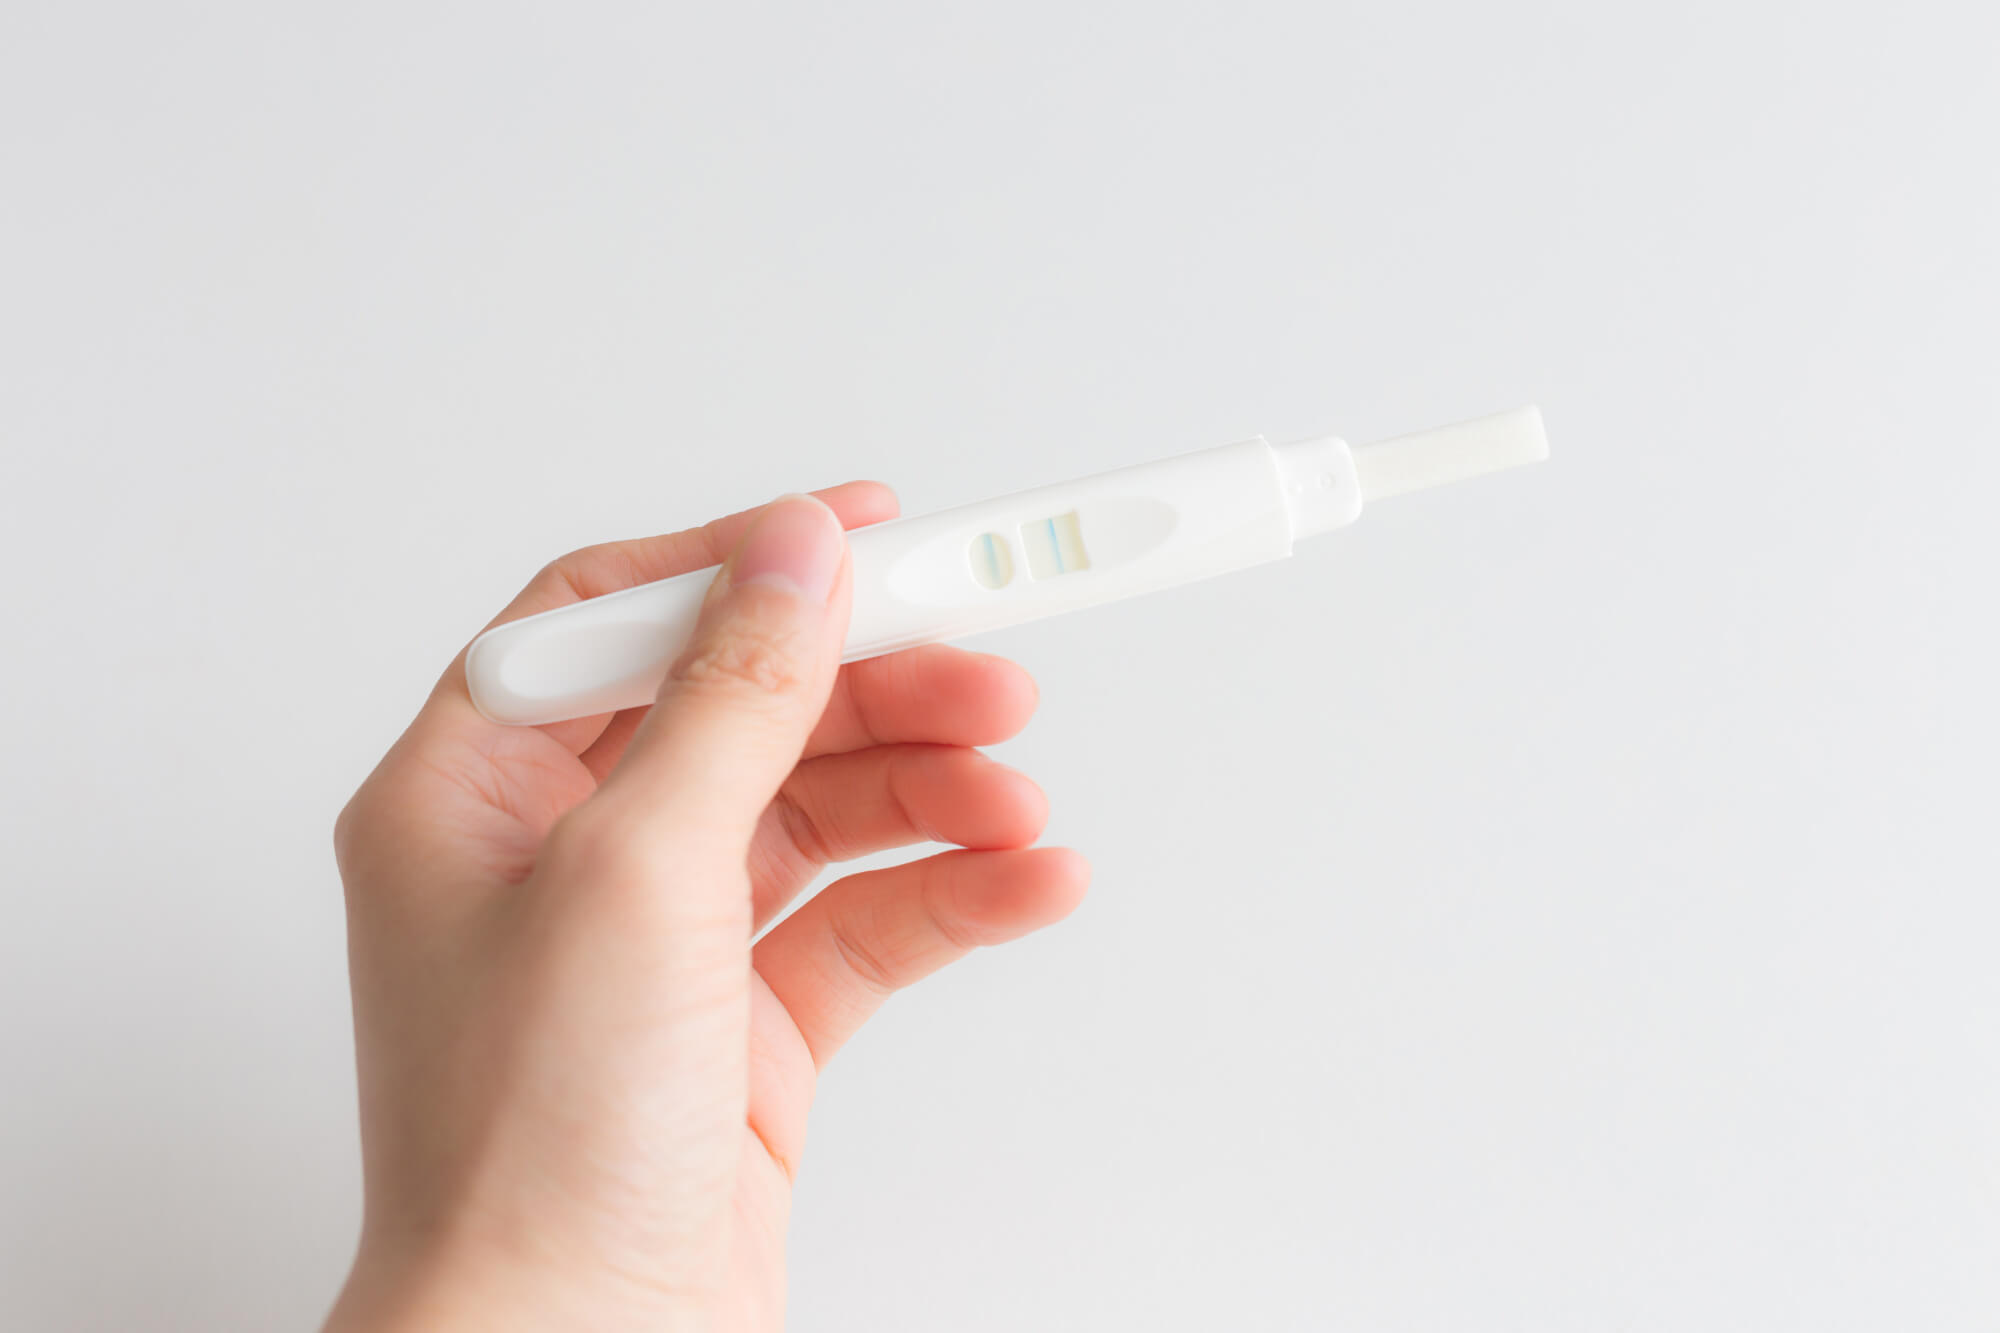 妊娠初期の可能性？妊娠検査薬を使用するタイミング、妊婦健康検査の内容を解説